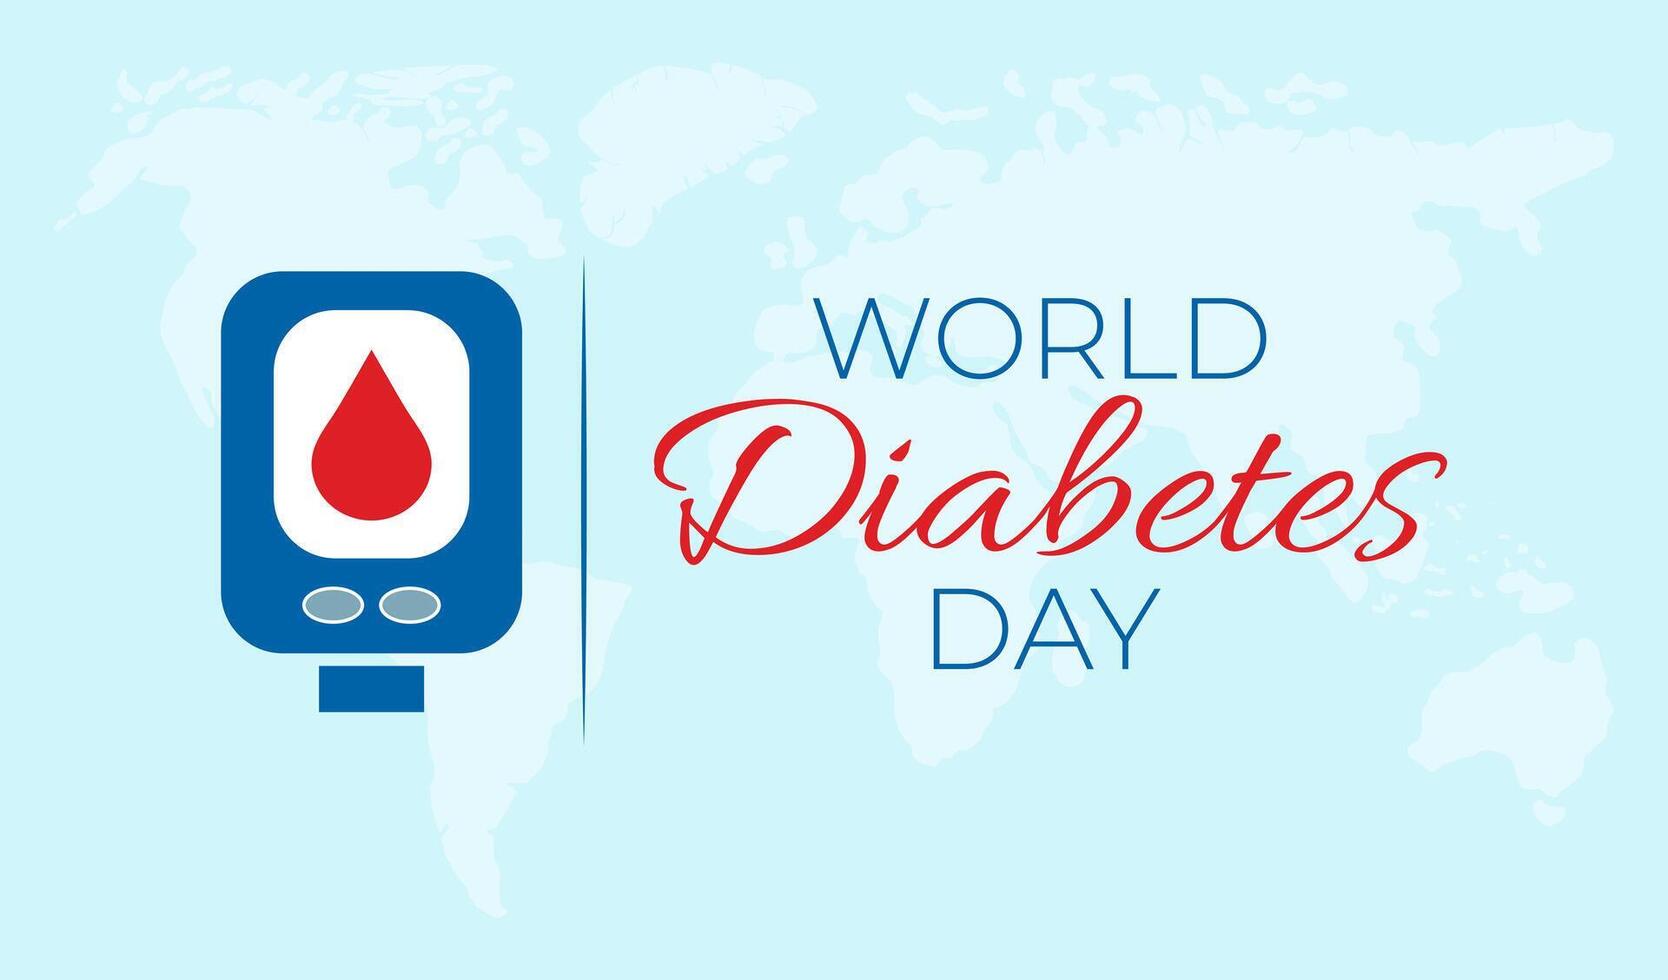 mundo diabetes dia ilustração fundo bandeira vetor